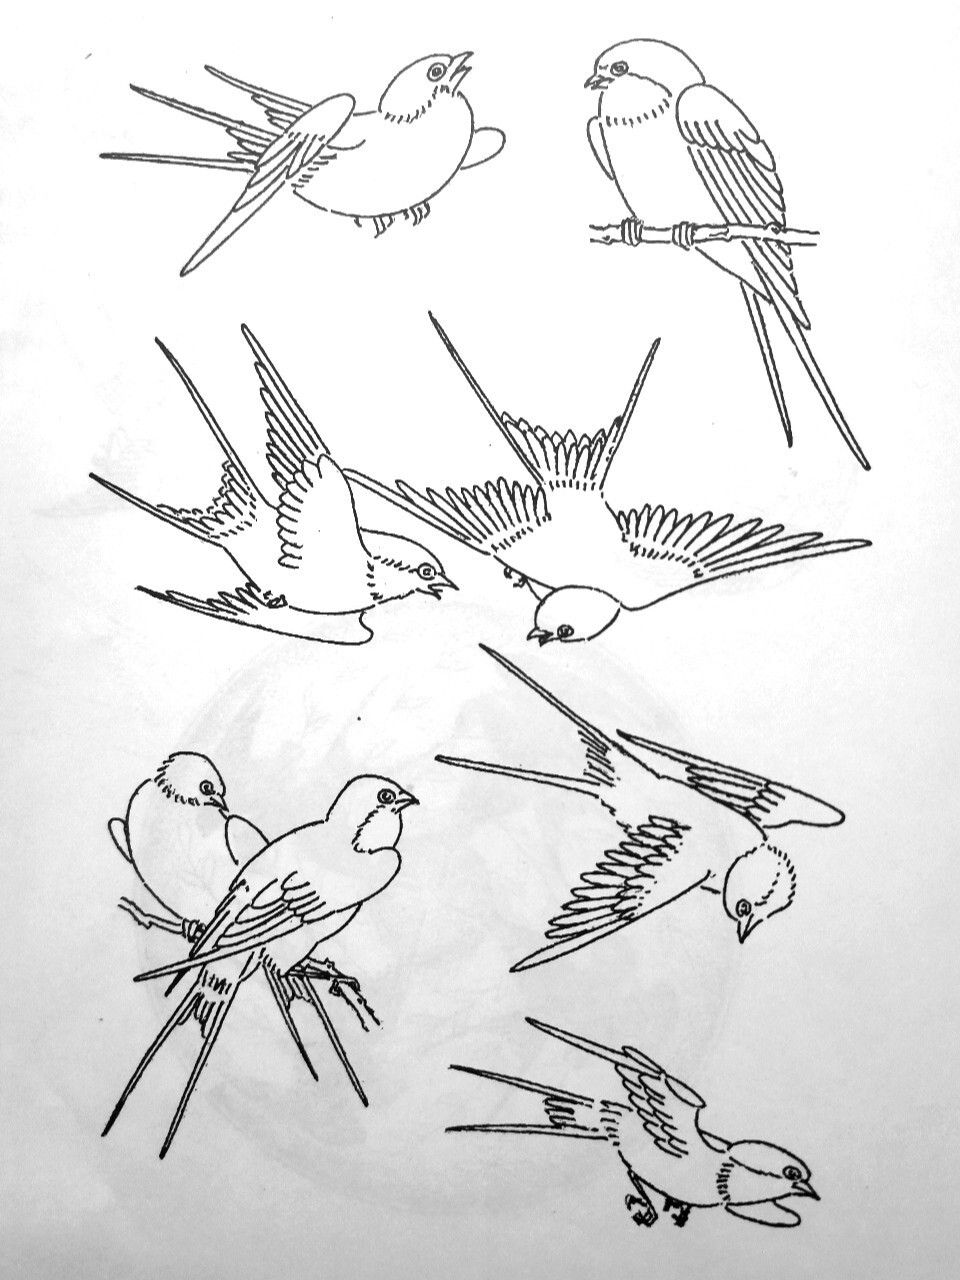 燕体较小,翅膀尖而长,尾巴分开像剪刀,捕食昆虫,对农作物有益